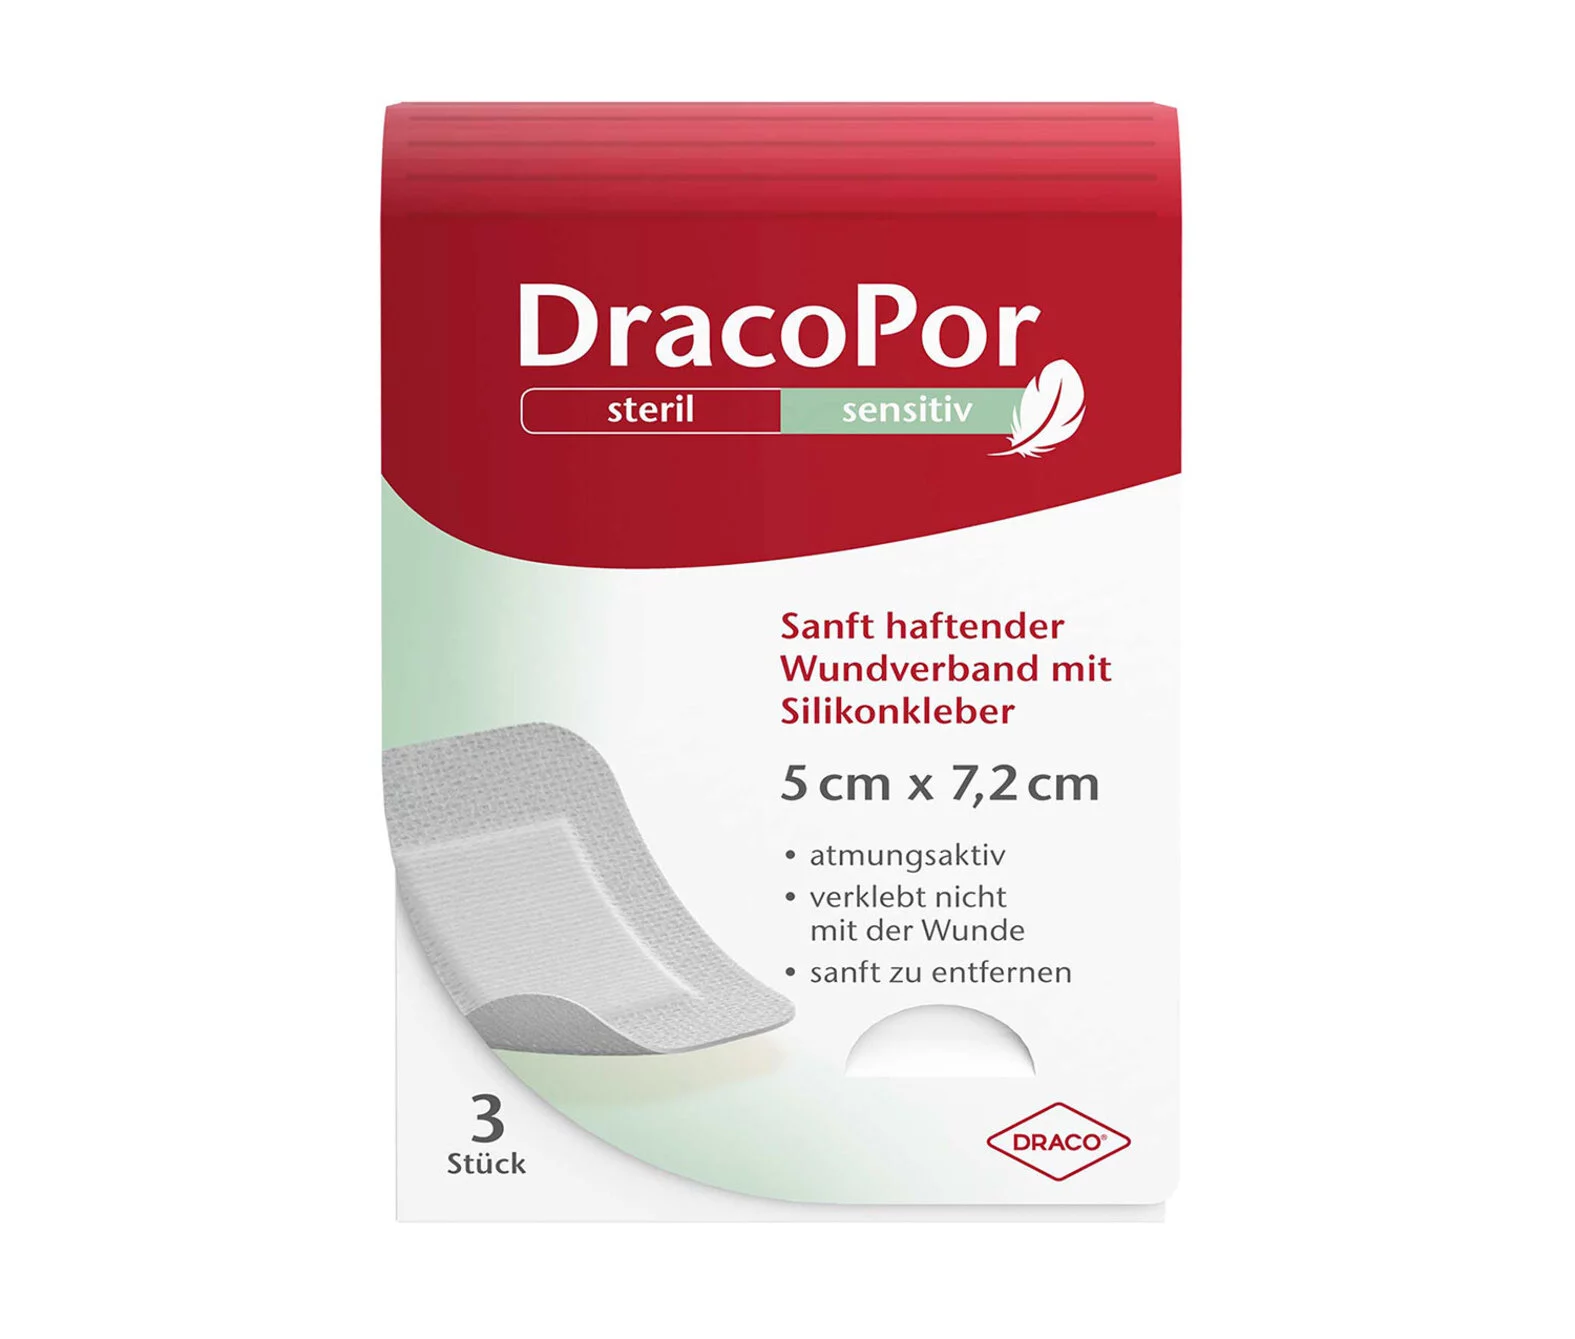 DracoPor sensitiv Kleine Größe Packshot